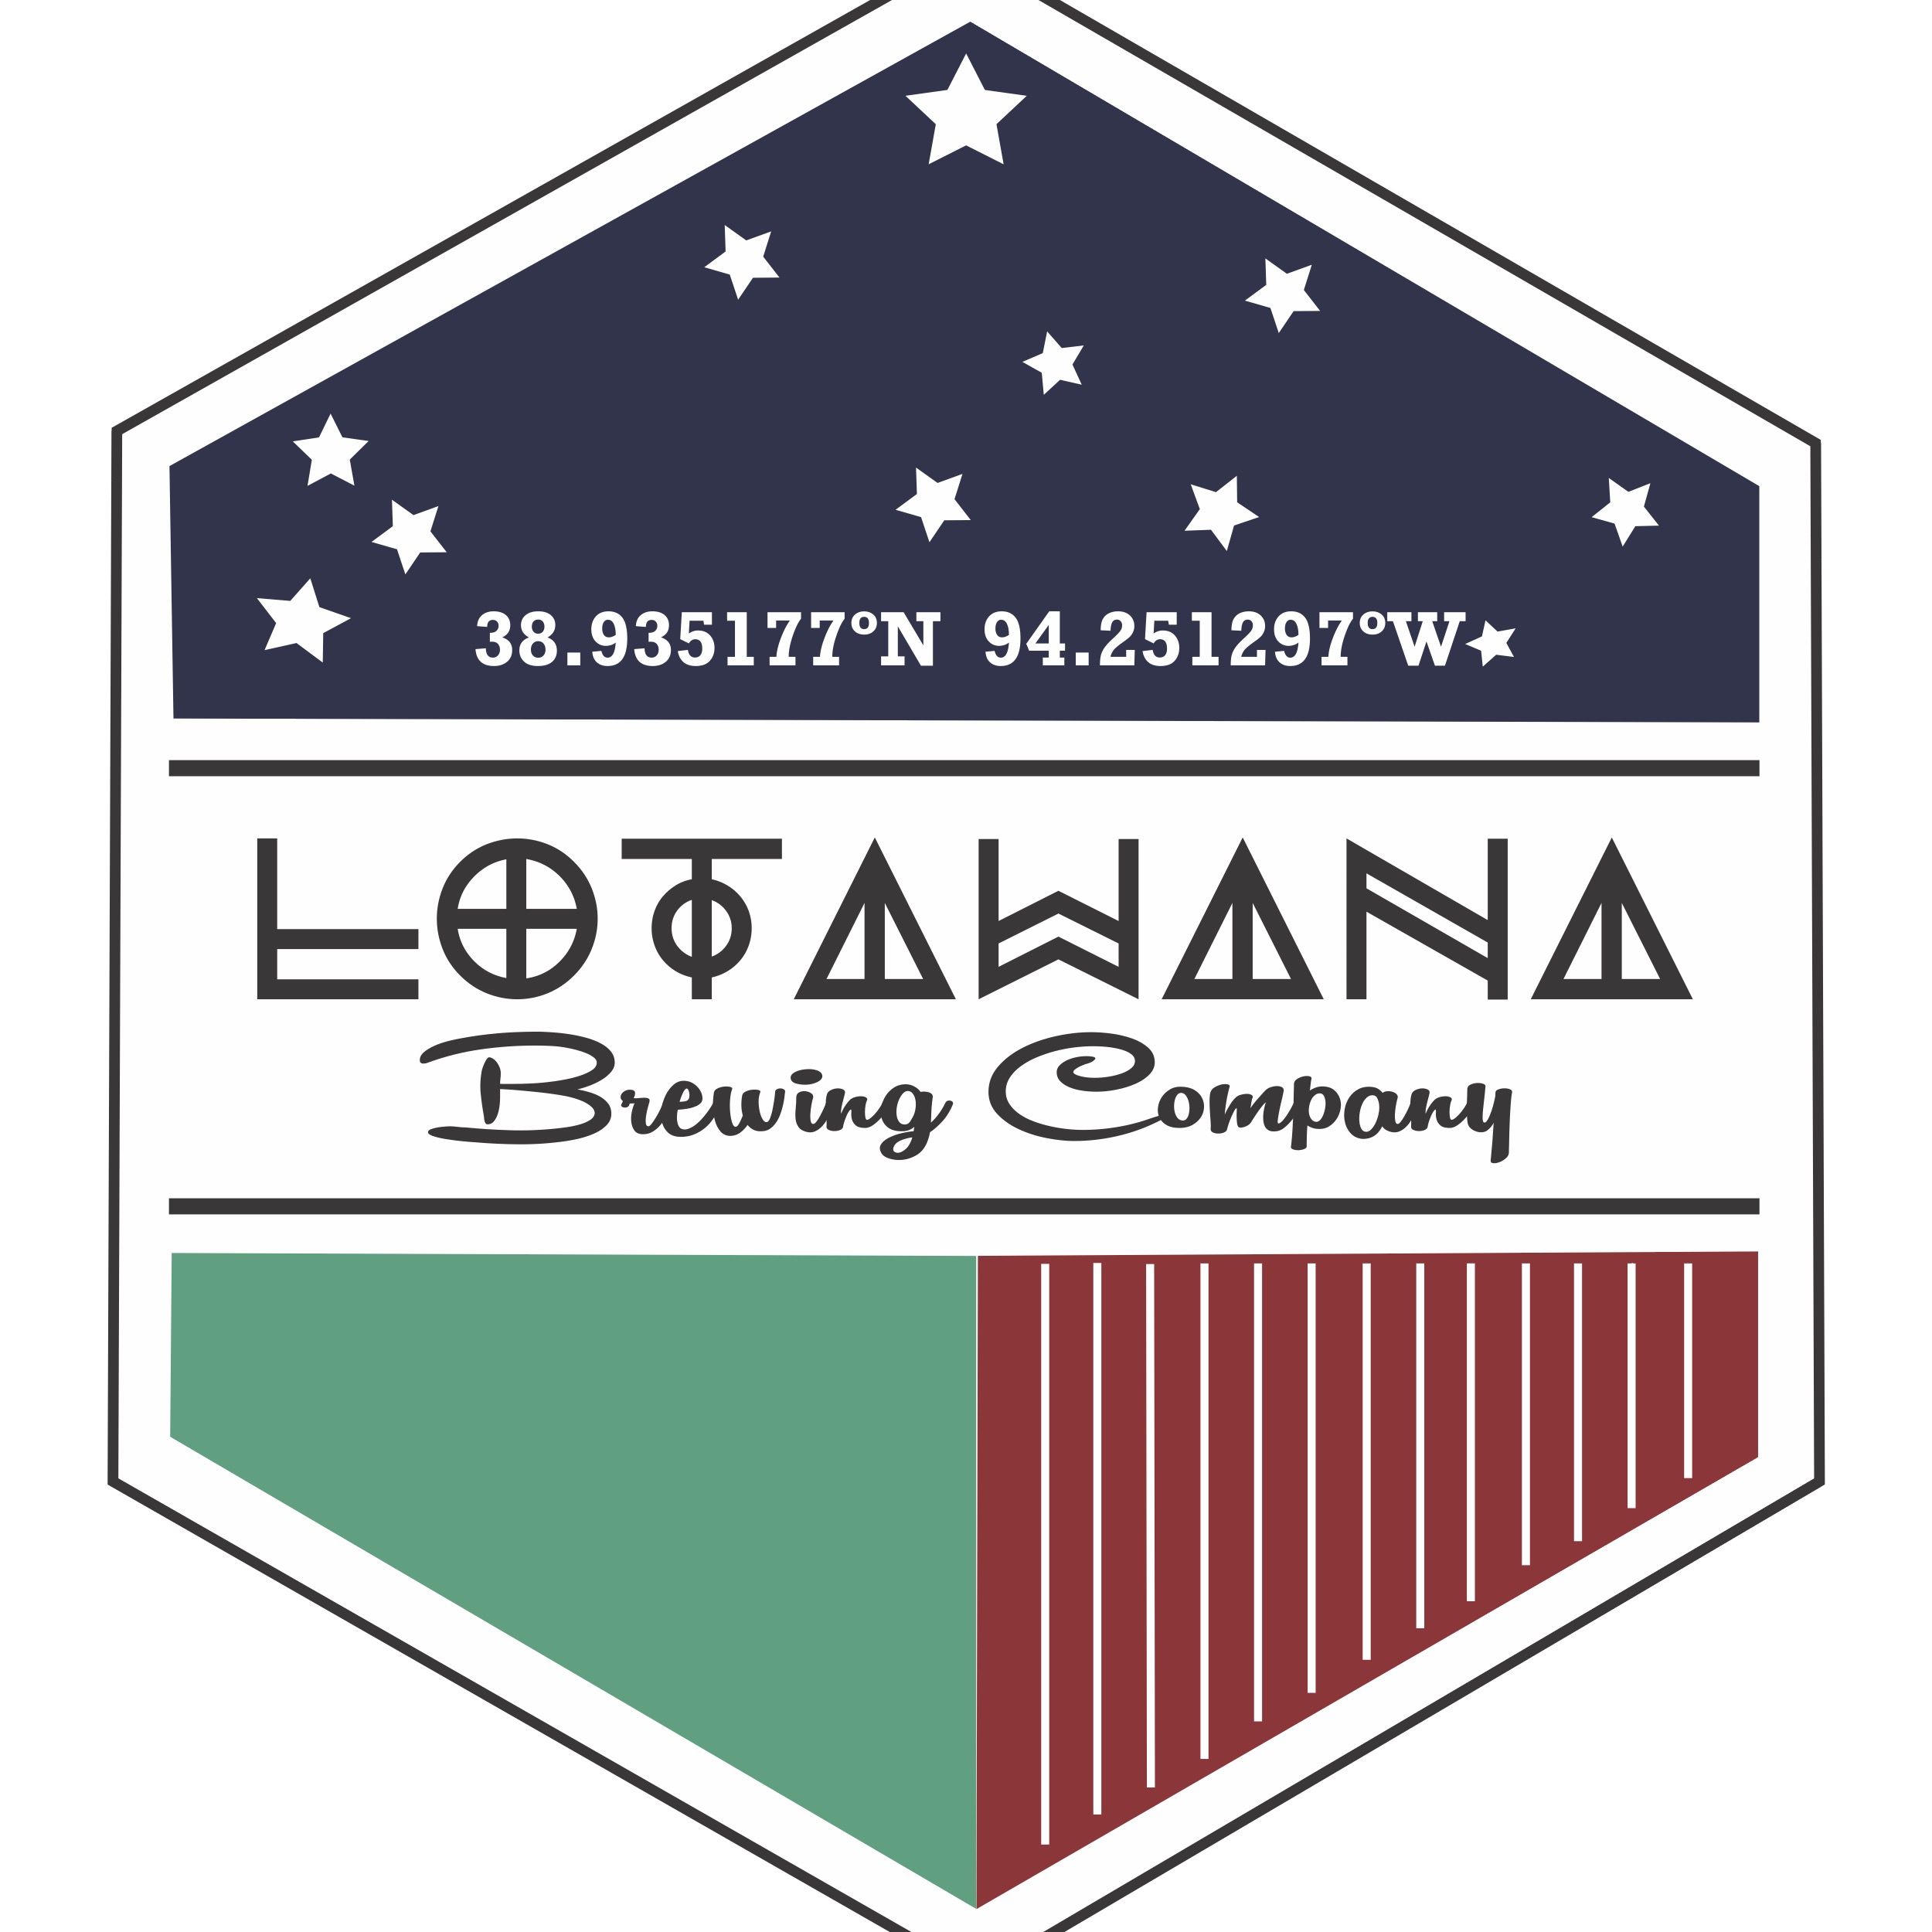 Lotawana Brewing Company logo 